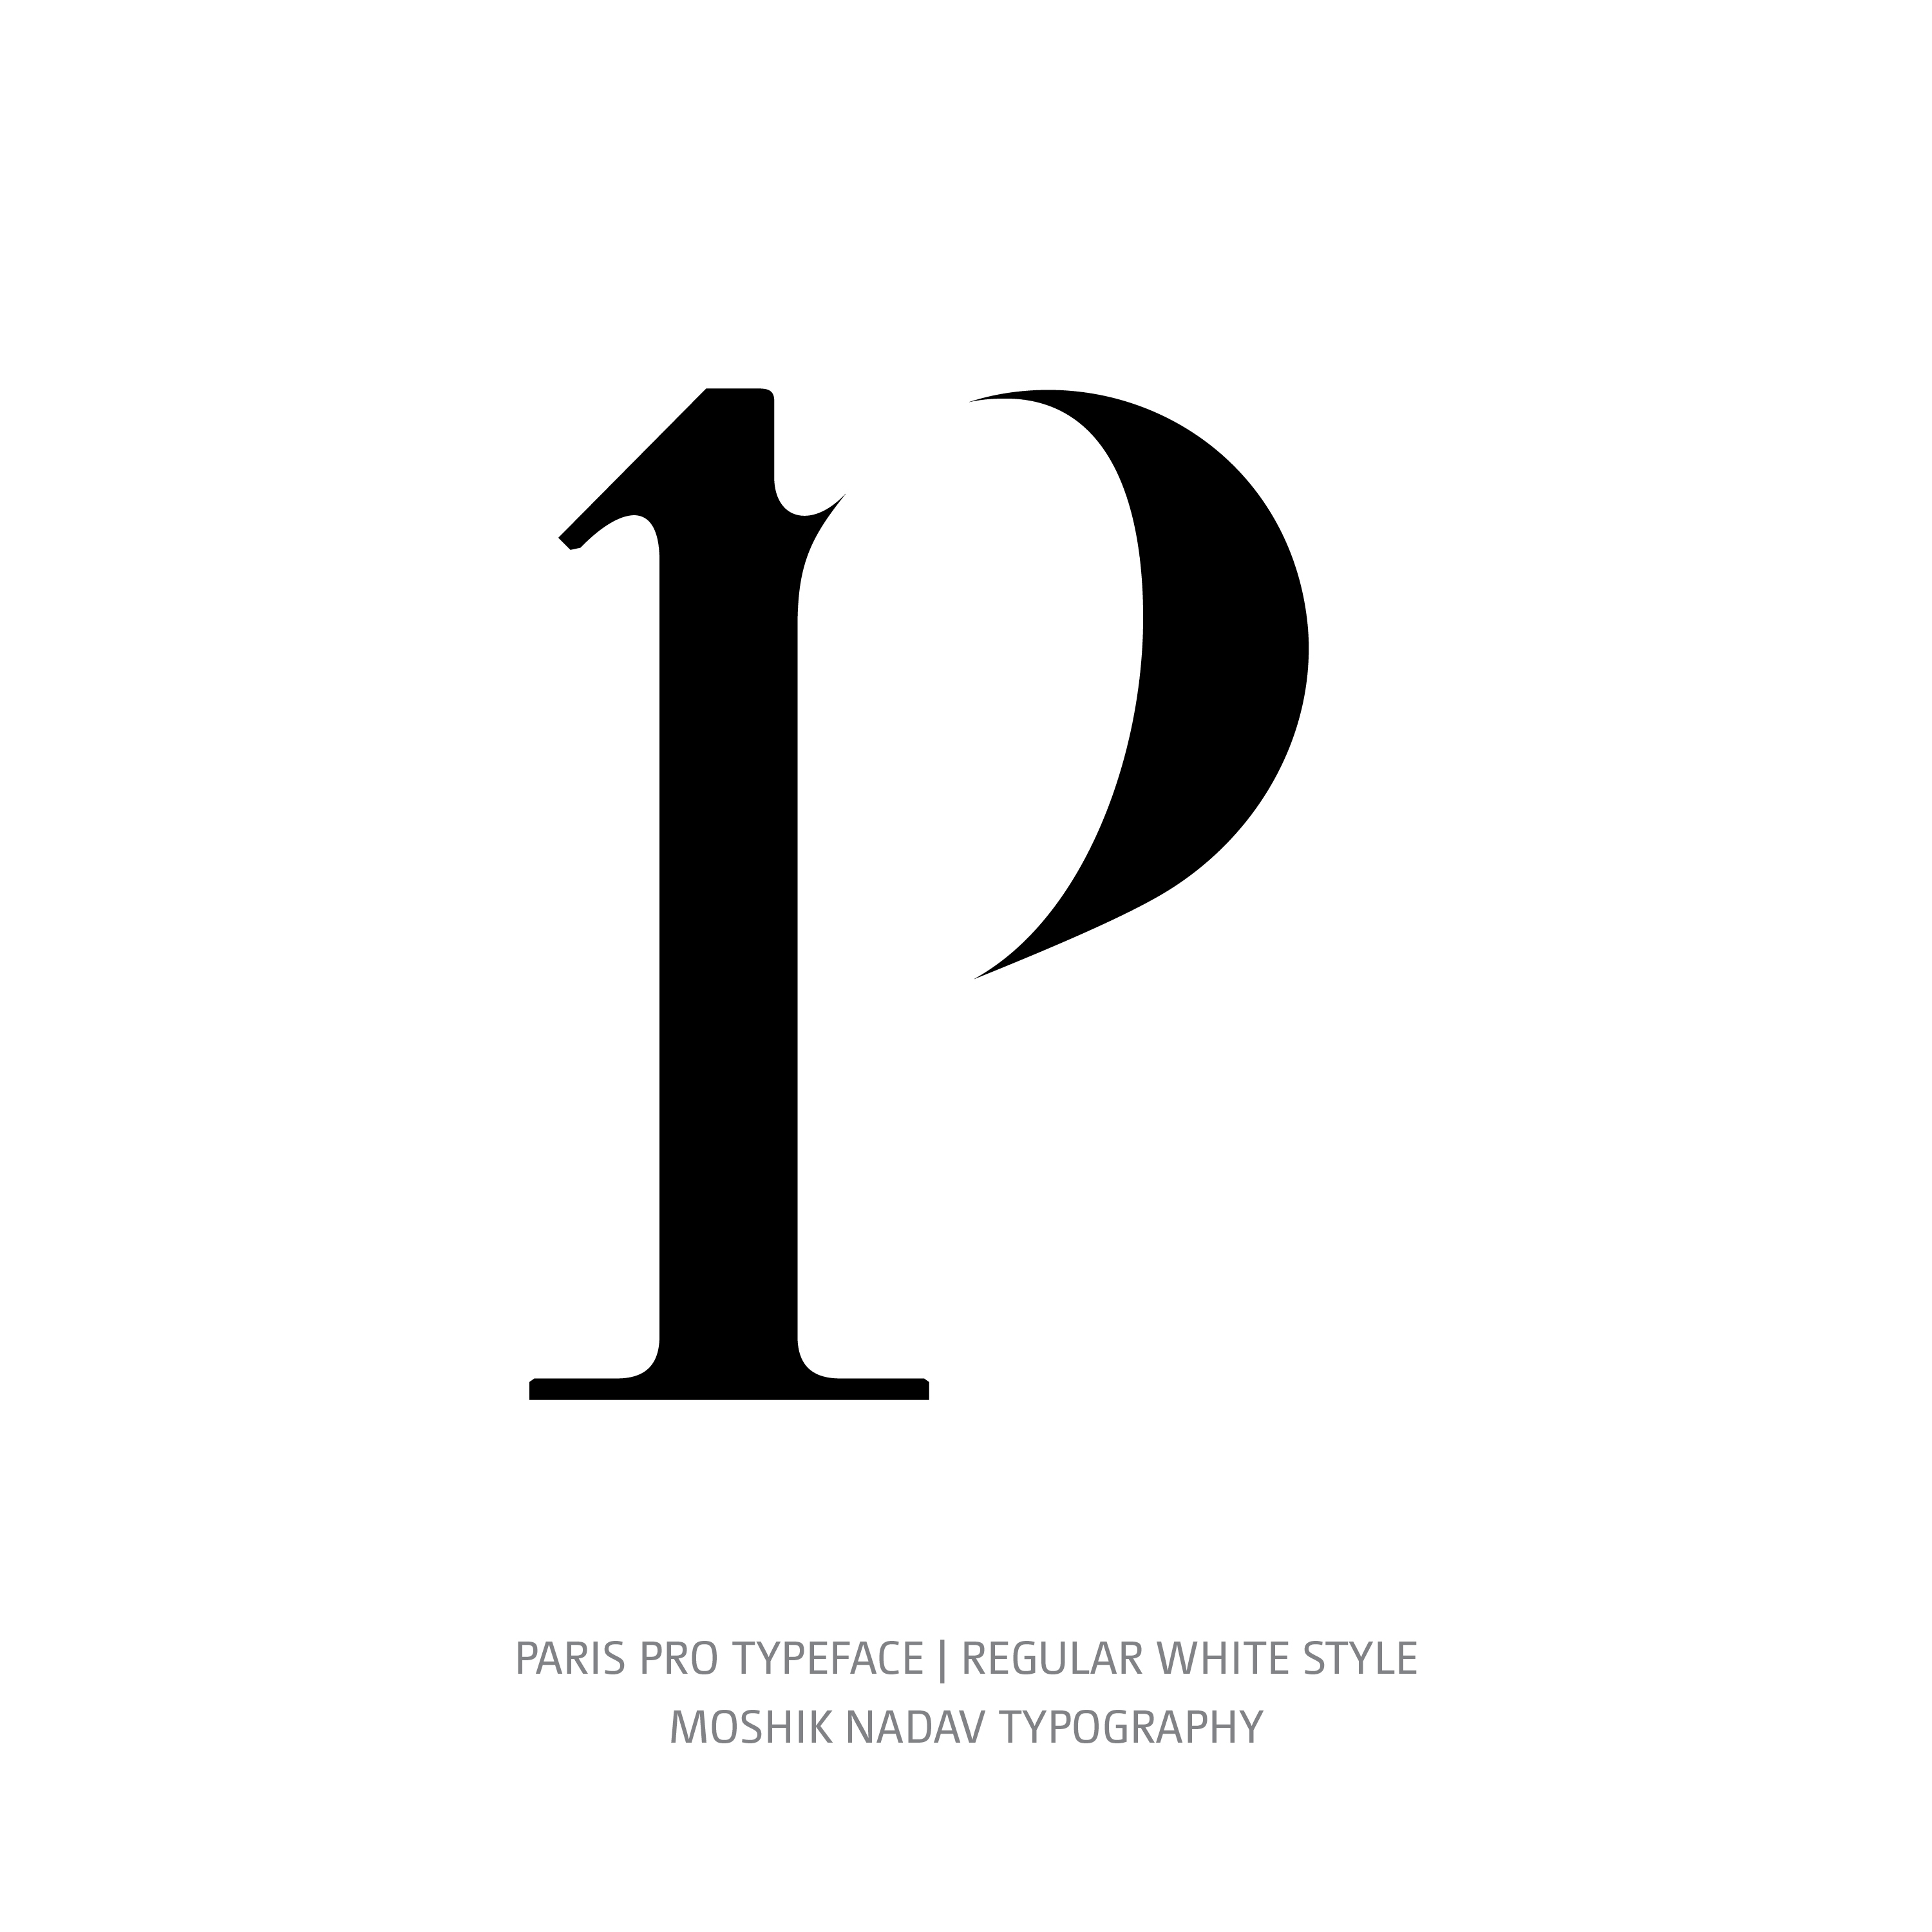 Paris Pro Typeface Regular White p